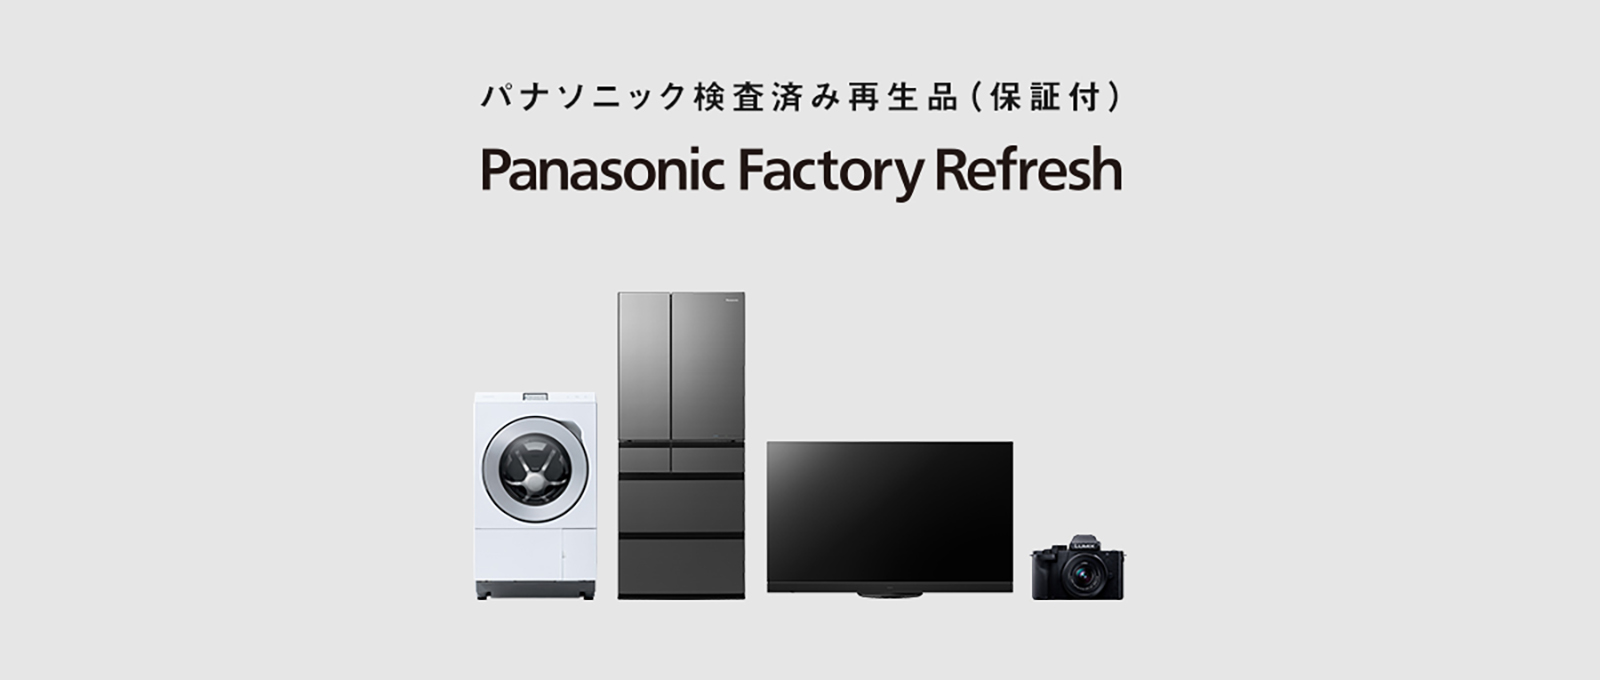 画像：Panasonic Factory Refreshキービジュアル